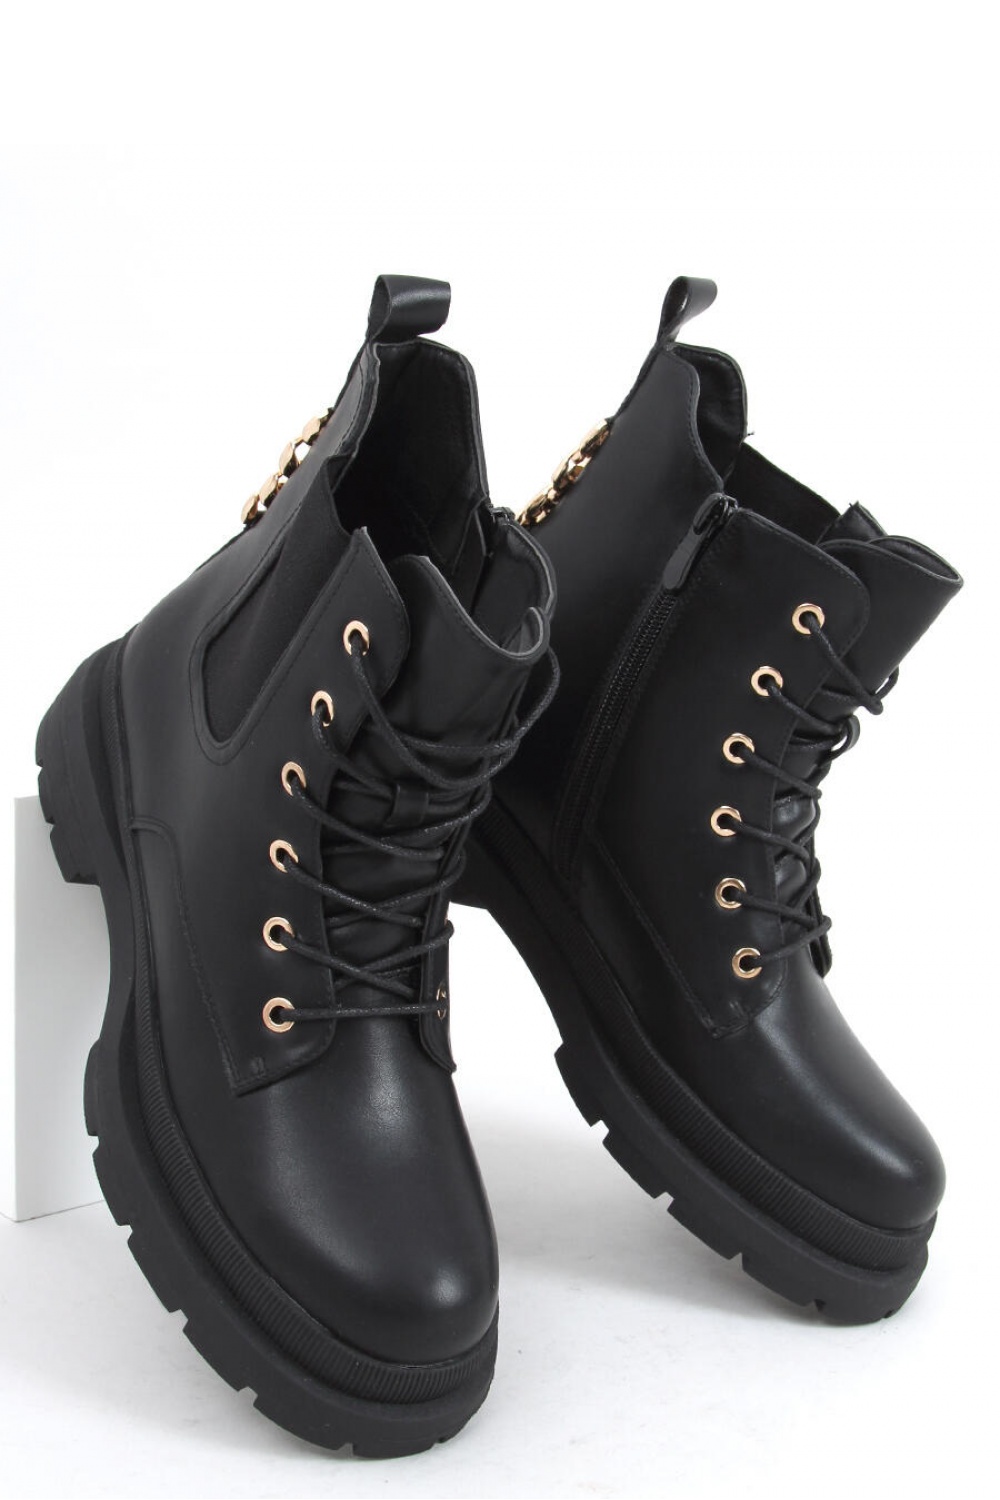  Boots model 159932 Inello  black